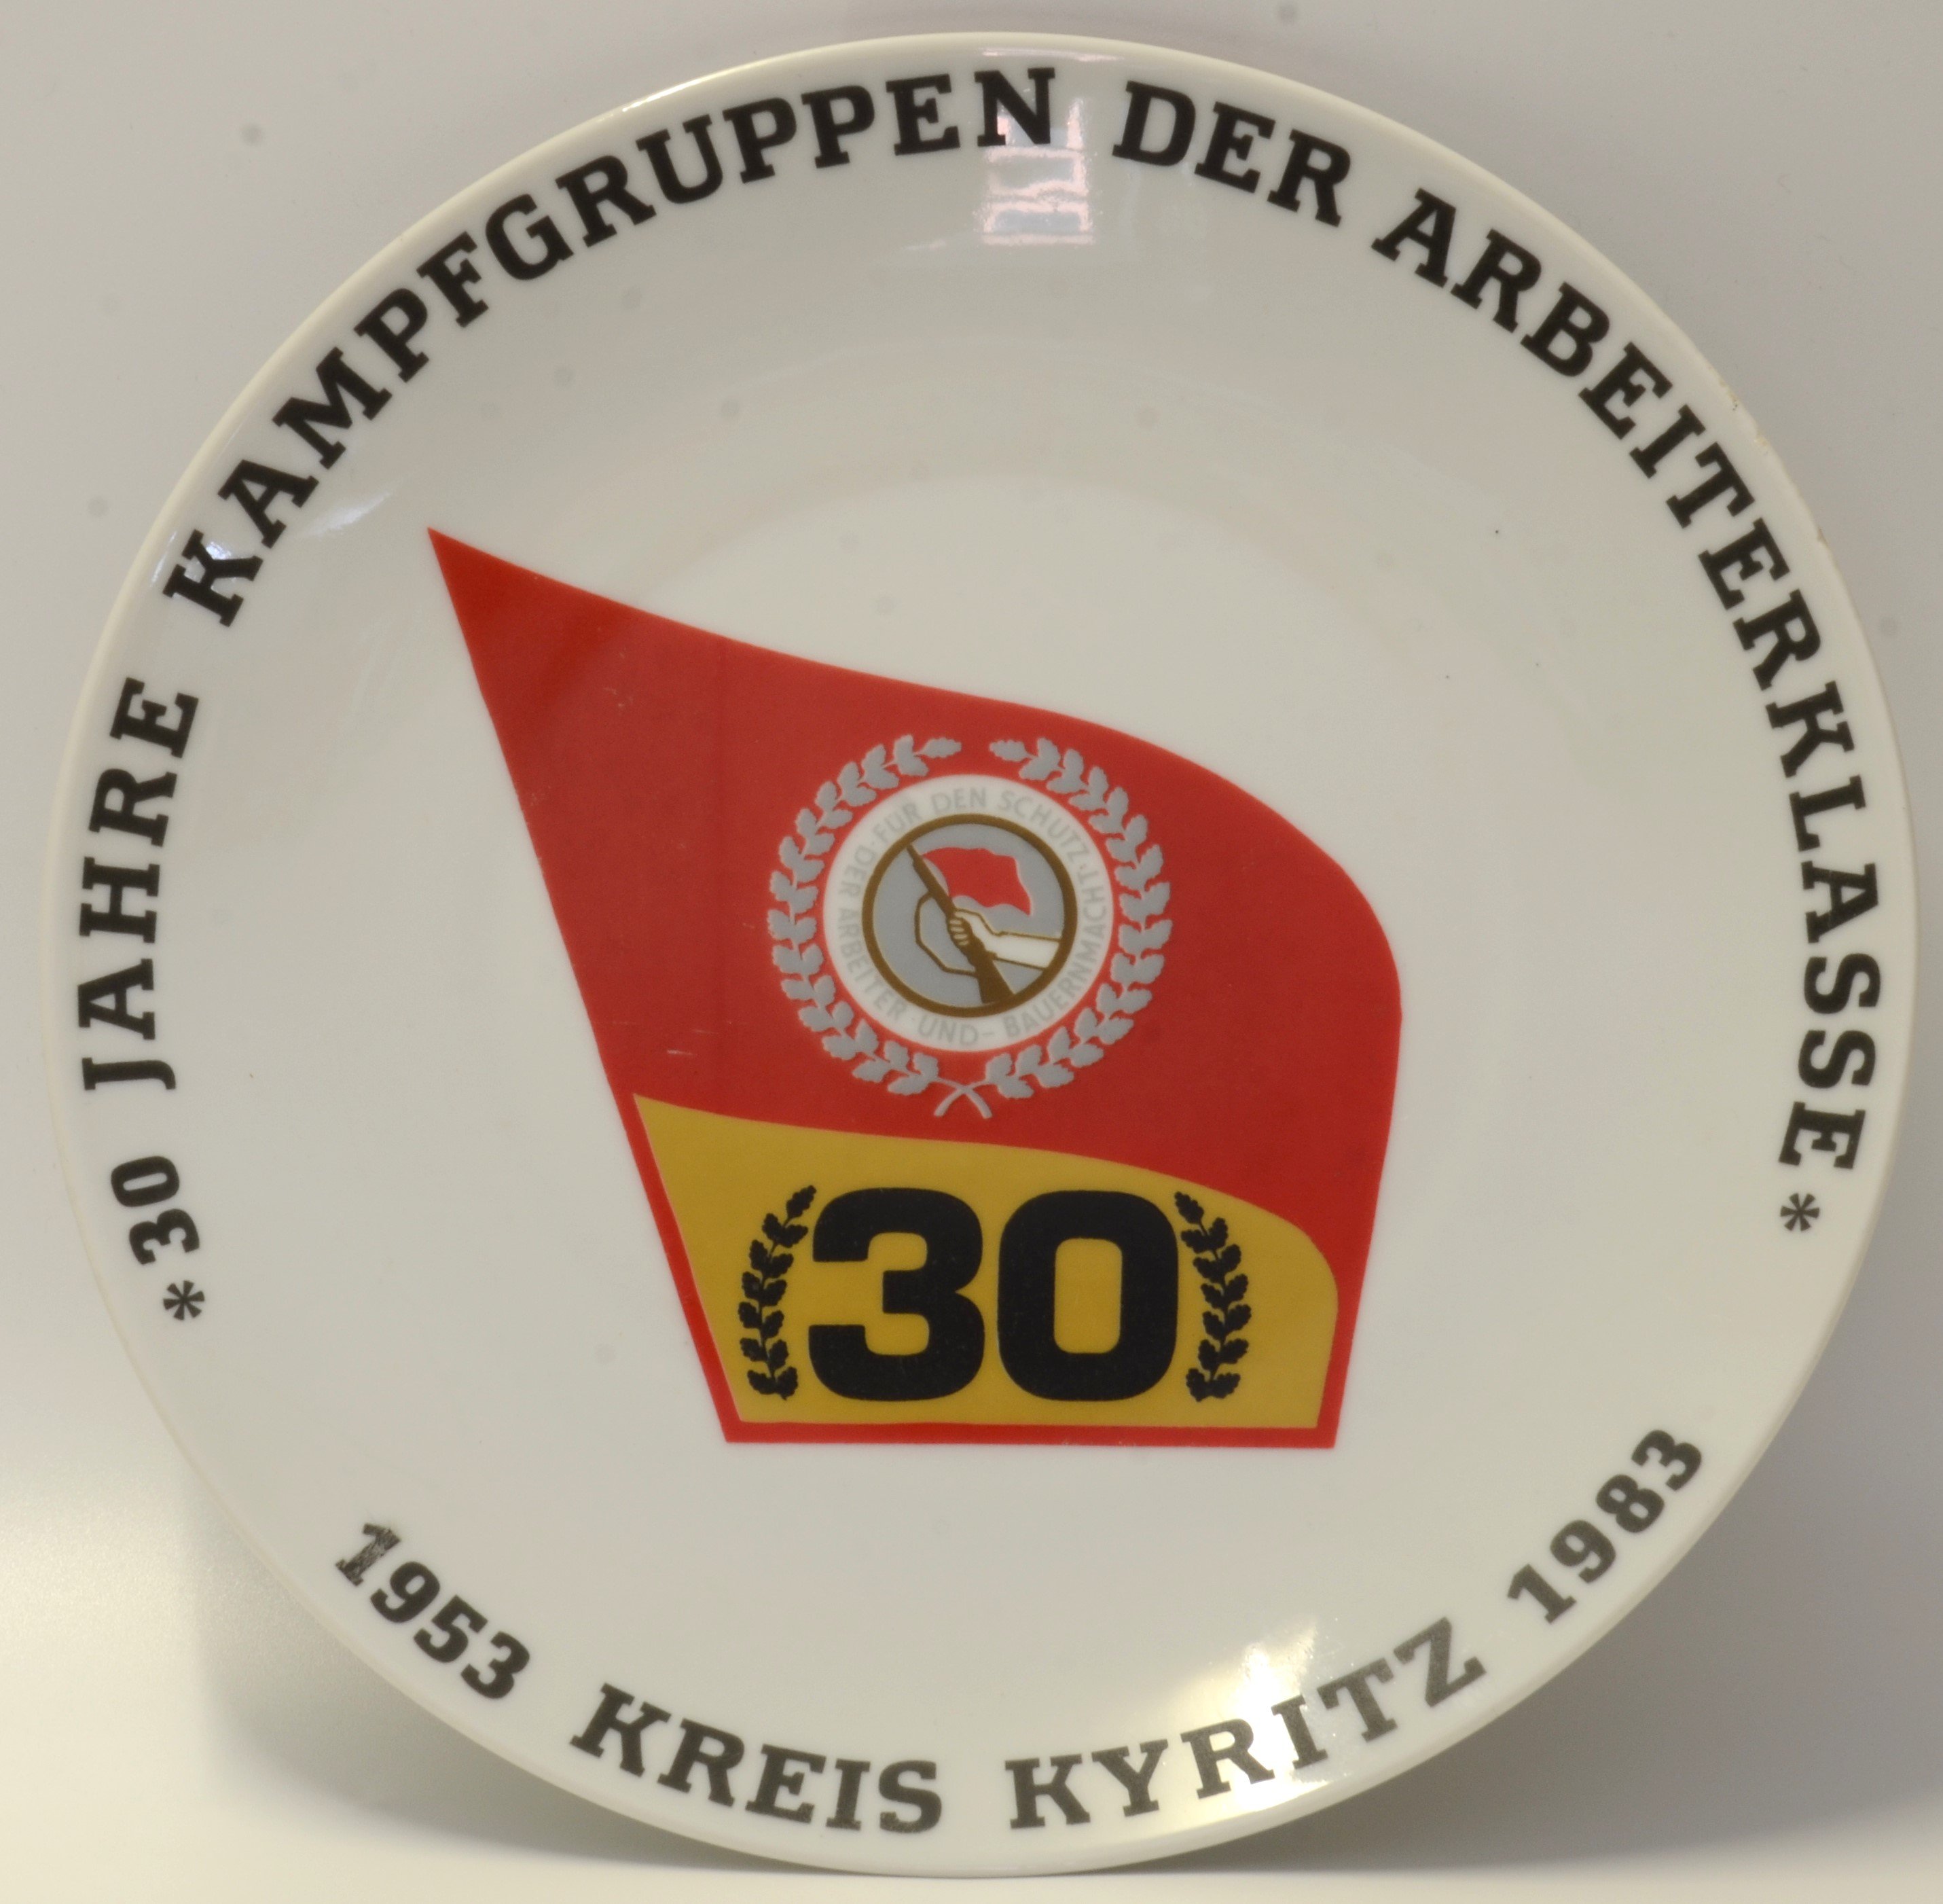 30 Jahre Kampfgruppen der Arbeiterklasse (DDR Geschichtsmuseum im Dokumentationszentrum Perleberg CC BY-SA)